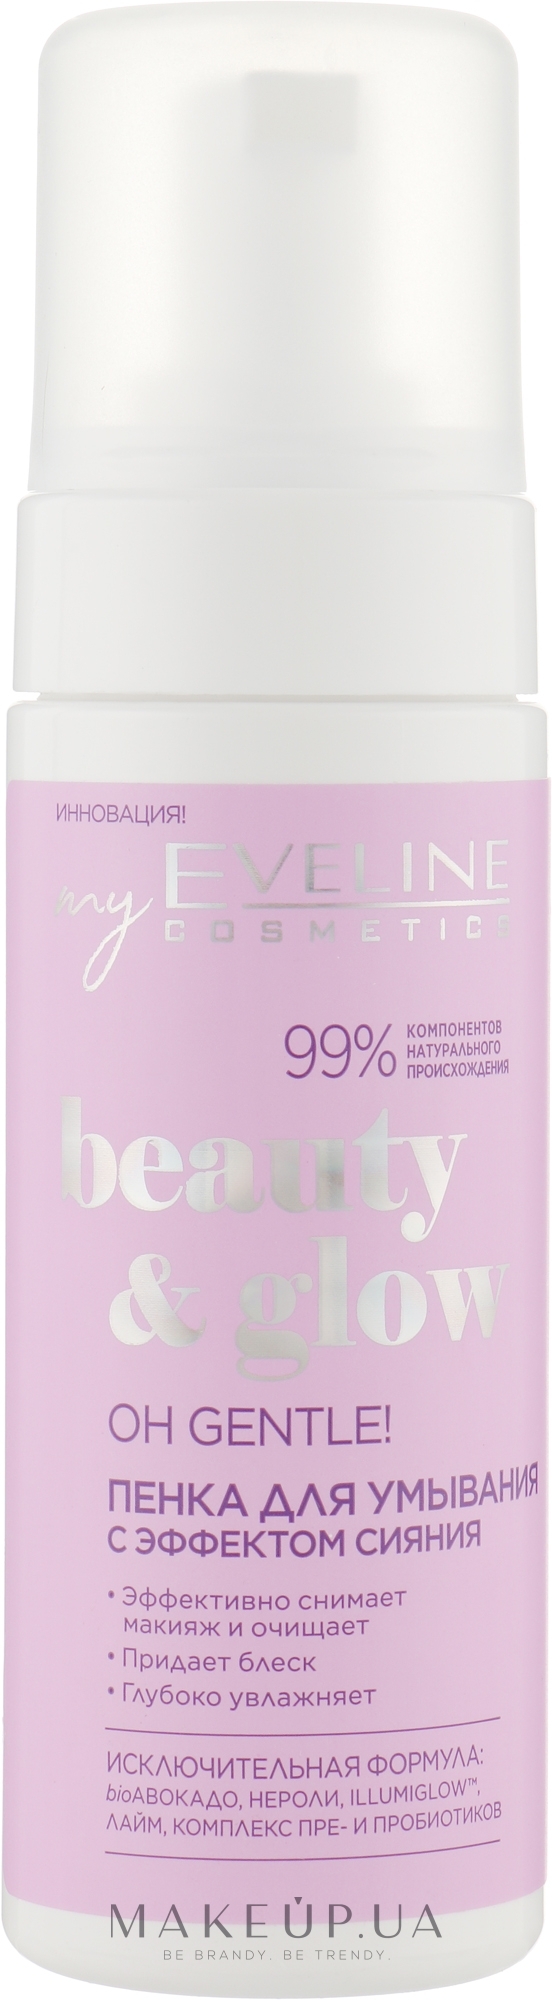 Освітлювальна пінка для вмивання для обличчя - Eveline Cosmetics Beuty & Glow Oh Gentle! — фото 150ml